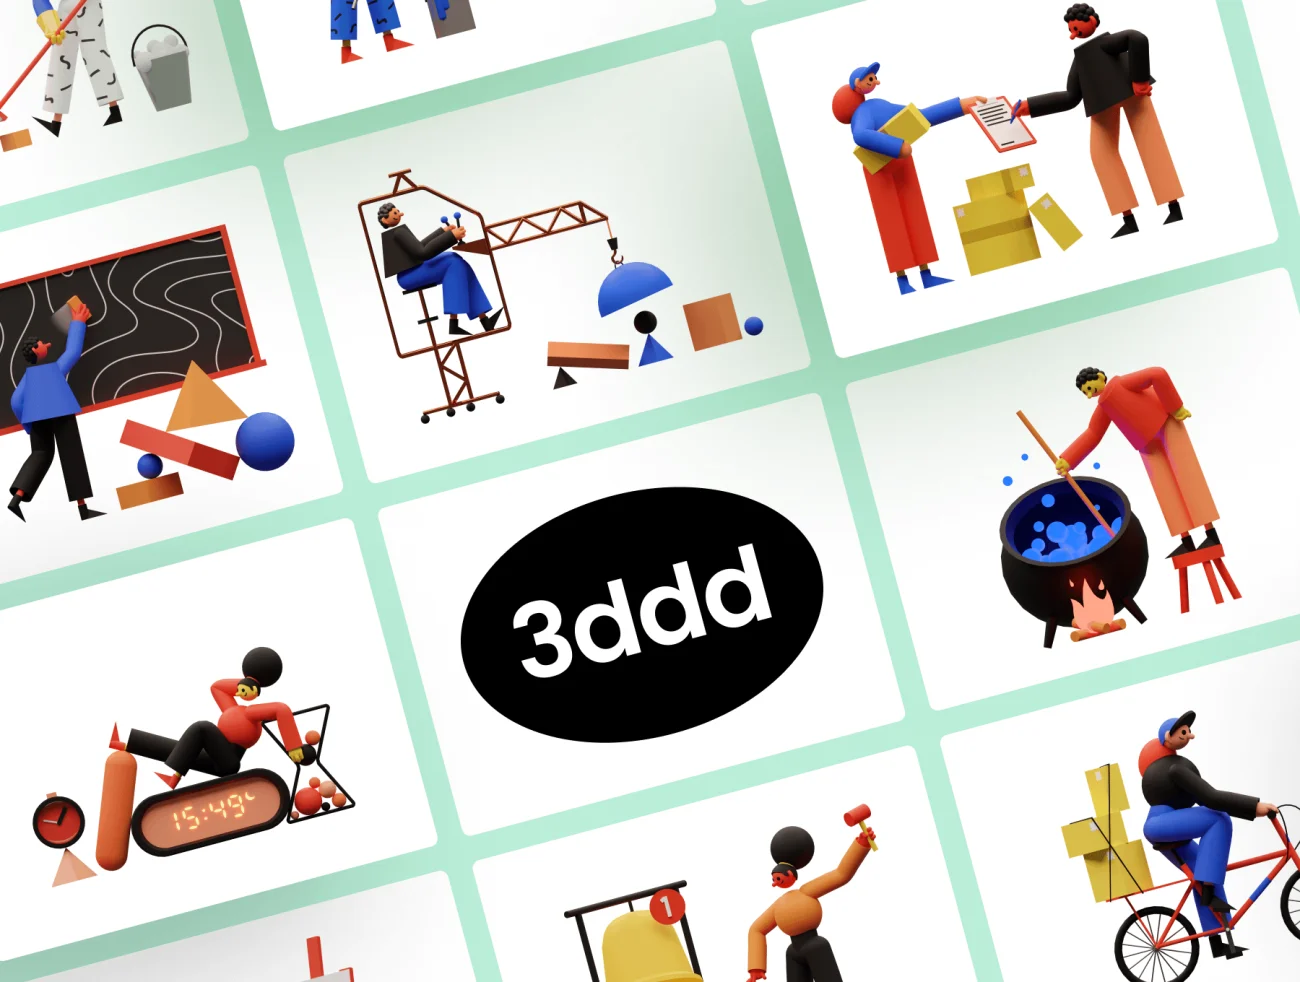 3DDD Illustrations 趣味卡通低面建模3D图标插图-人物插画、场景插画、学习生活、插画、插画功能、插画风格、概念创意、营销创业、趣味漫画-到位啦UI